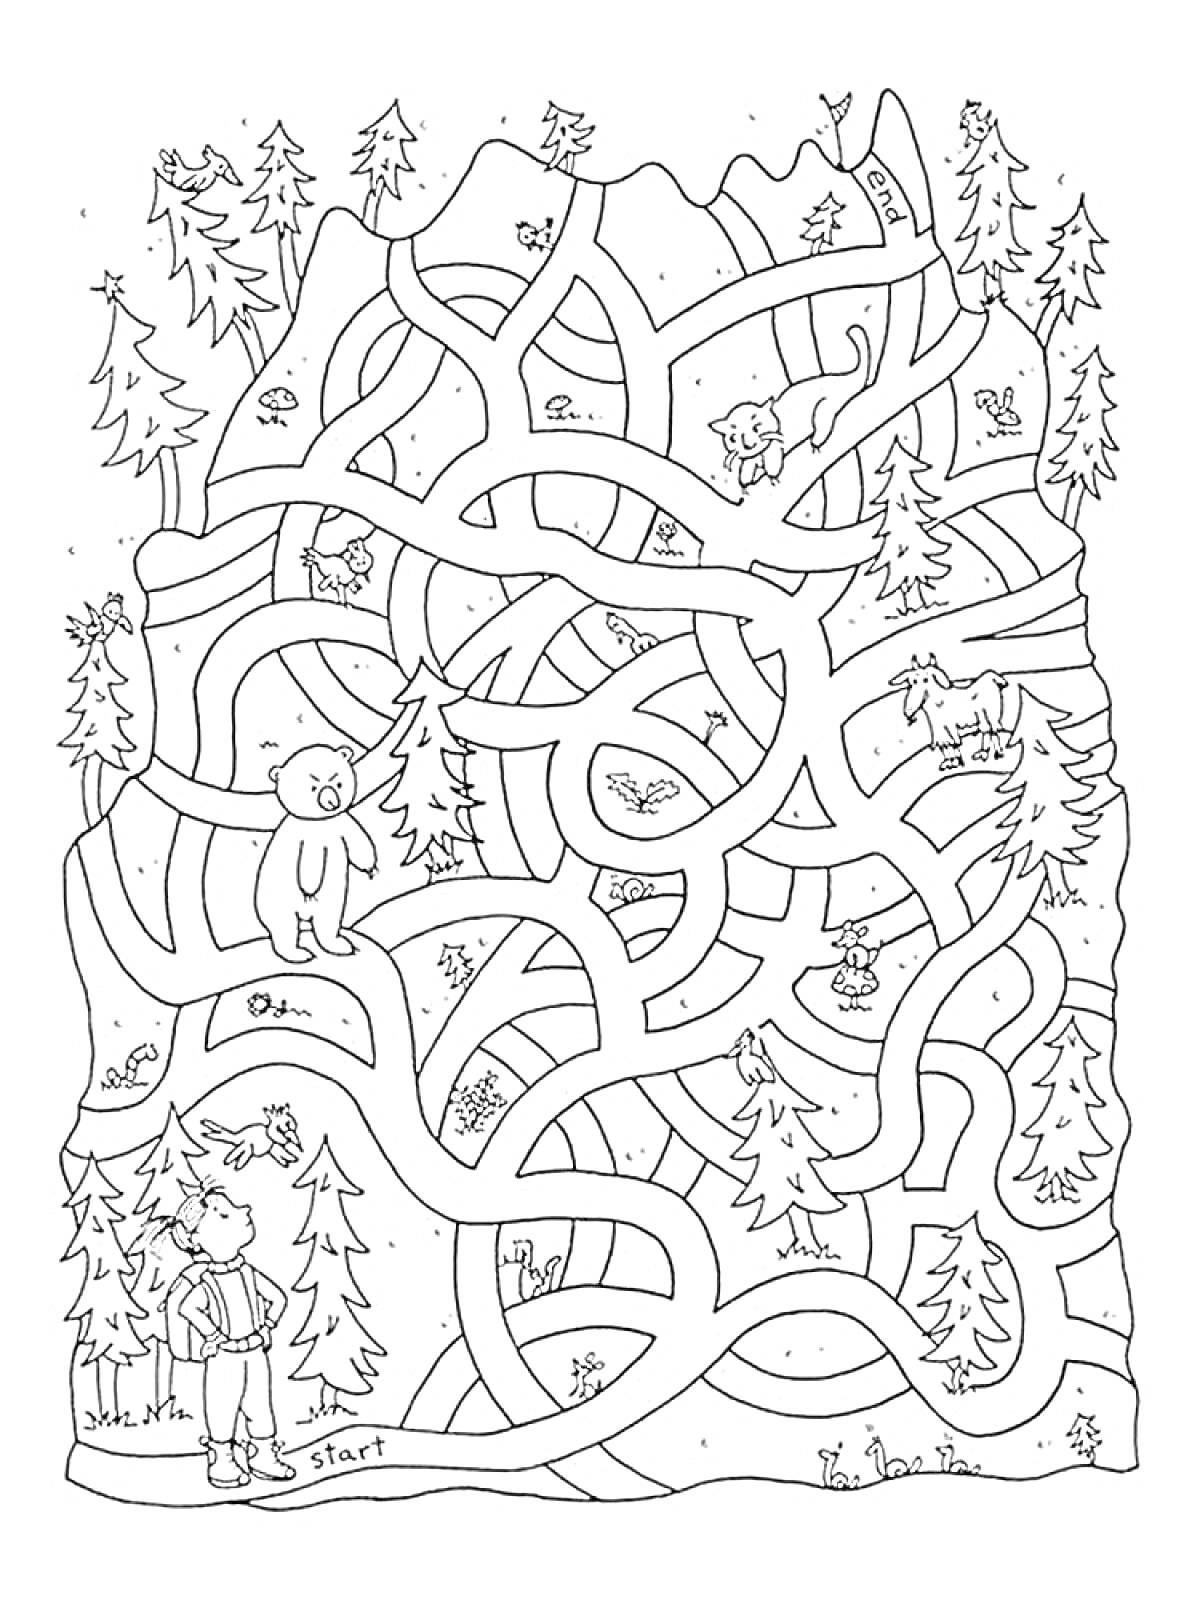 Раскраска Лабиринт в лесу со зверями и человеком у входа